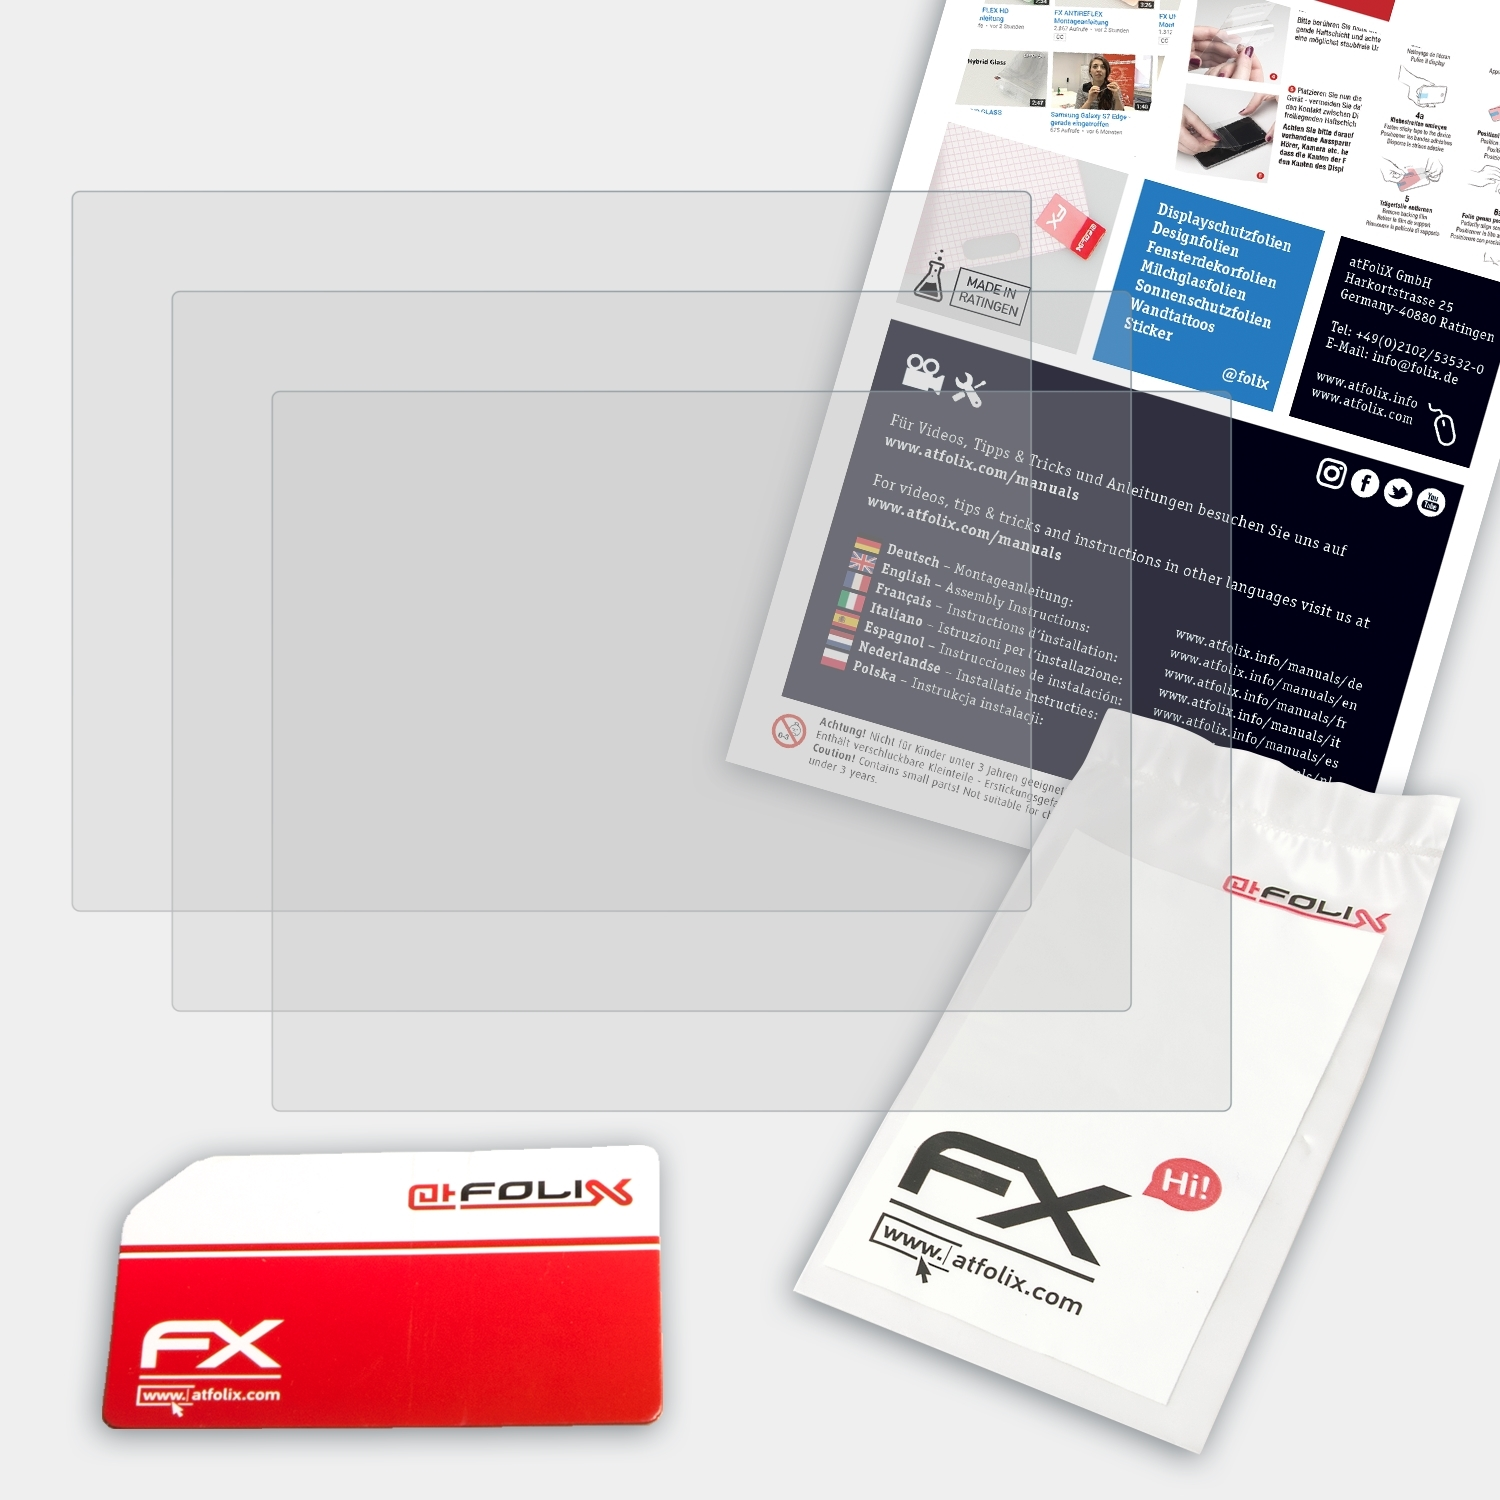 X-Pro1) Fujifilm 3x FX-Antireflex Displayschutz(für ATFOLIX